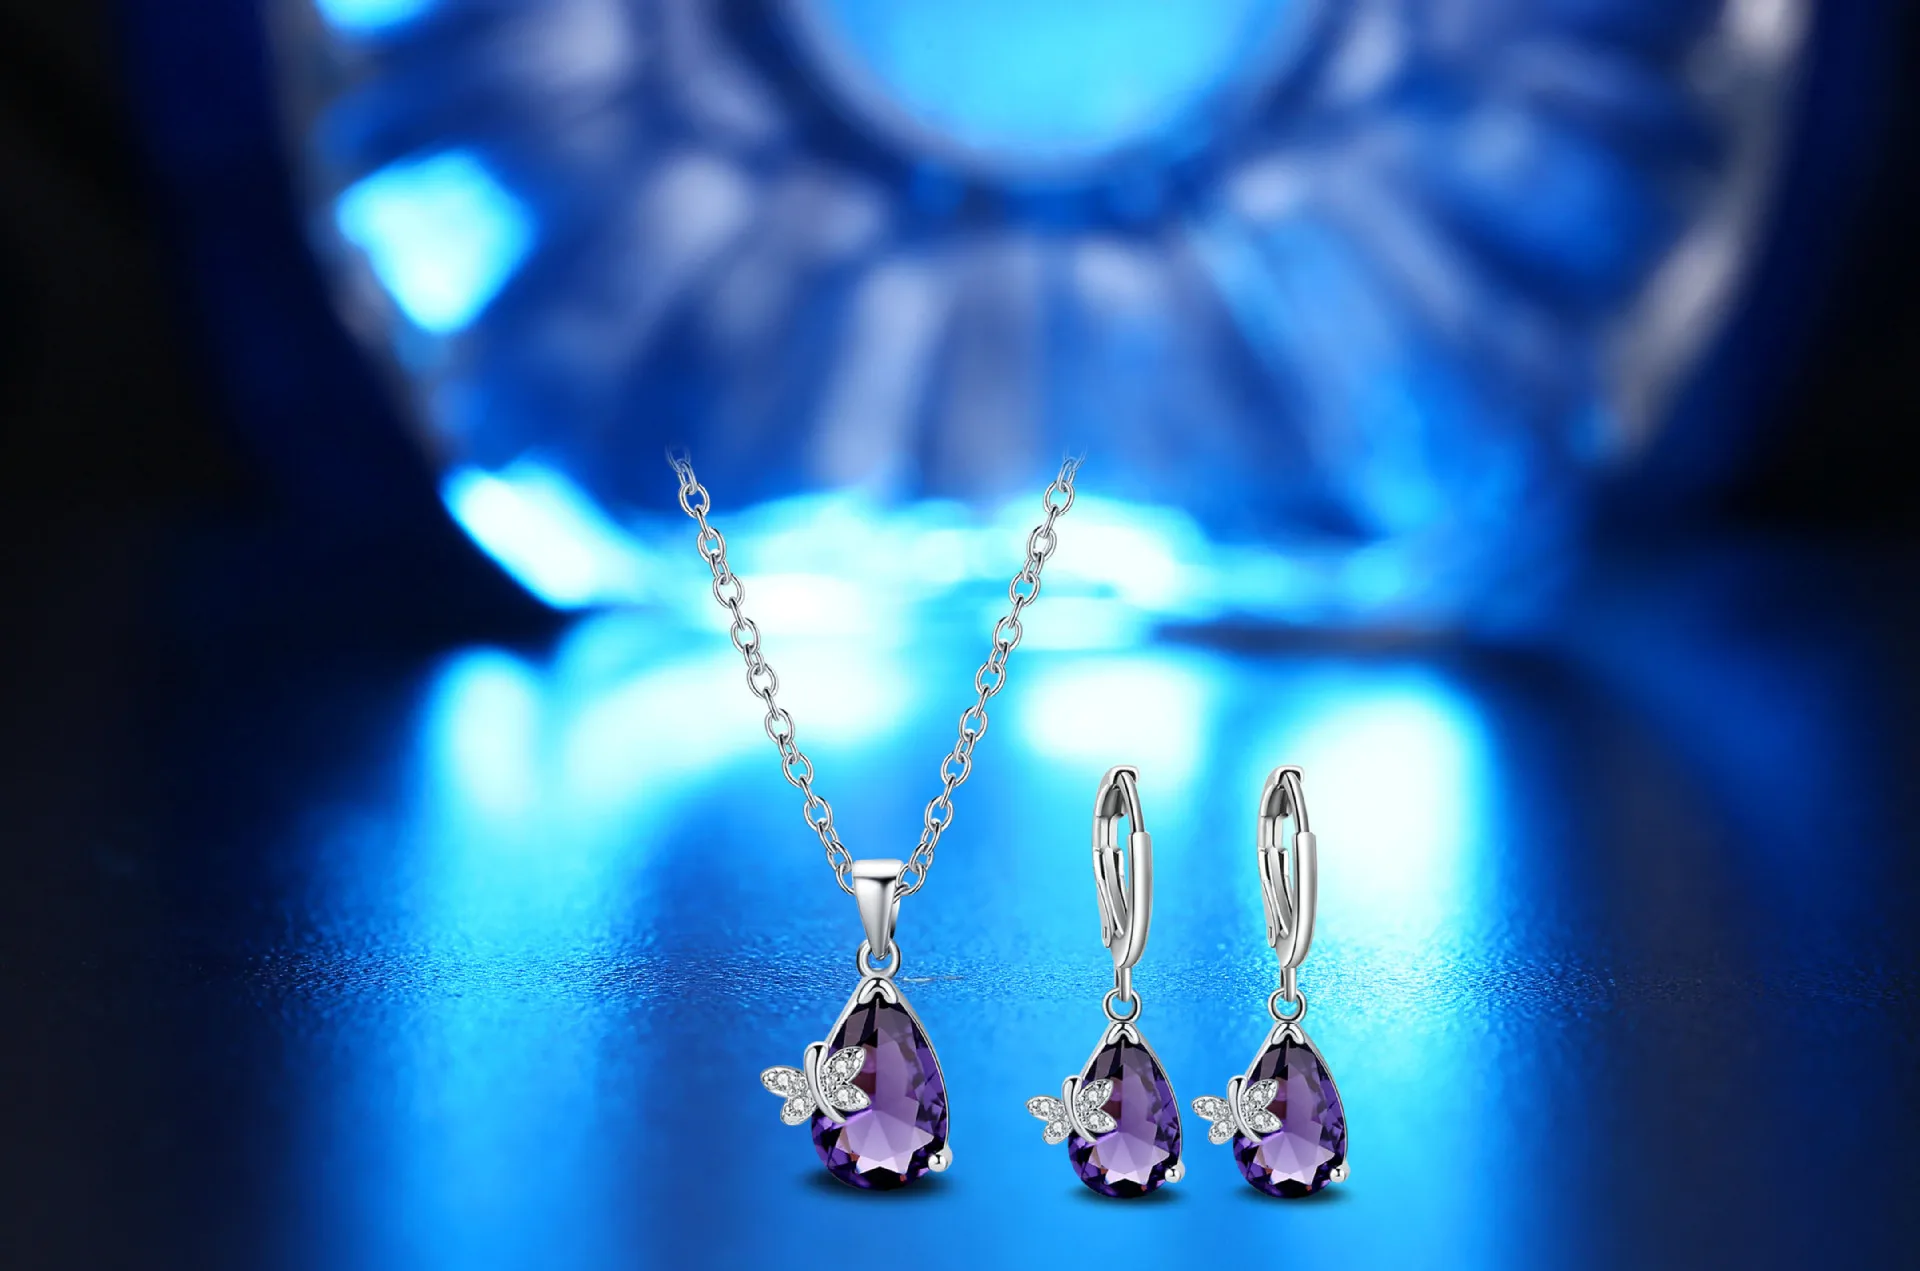 OMHXZJ, индивидуальная мода, OL, женская фиолетовая бабочка, циркон, 925 пробы, серебряные серьги+ ожерелье, ювелирный набор SE12